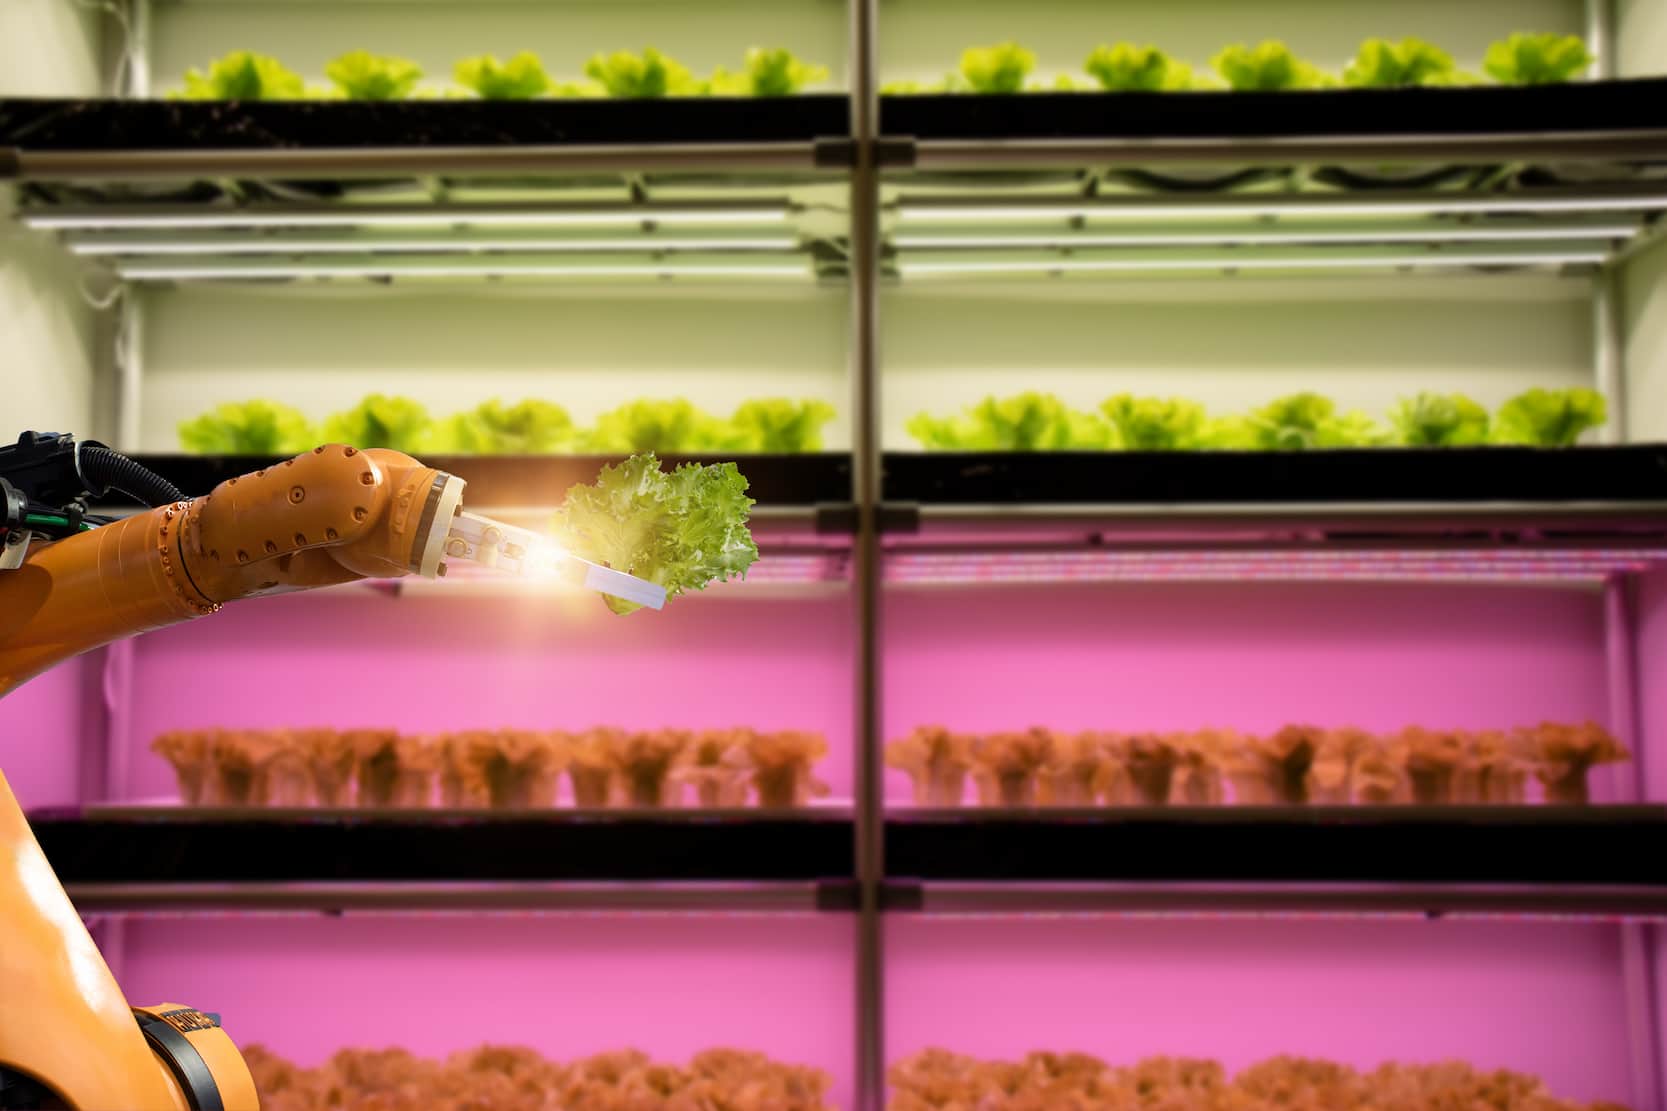 Fazenda inteligente. Conceito de tecnologia agrícola industrial, robô de automação escolhe vegetais em estufa